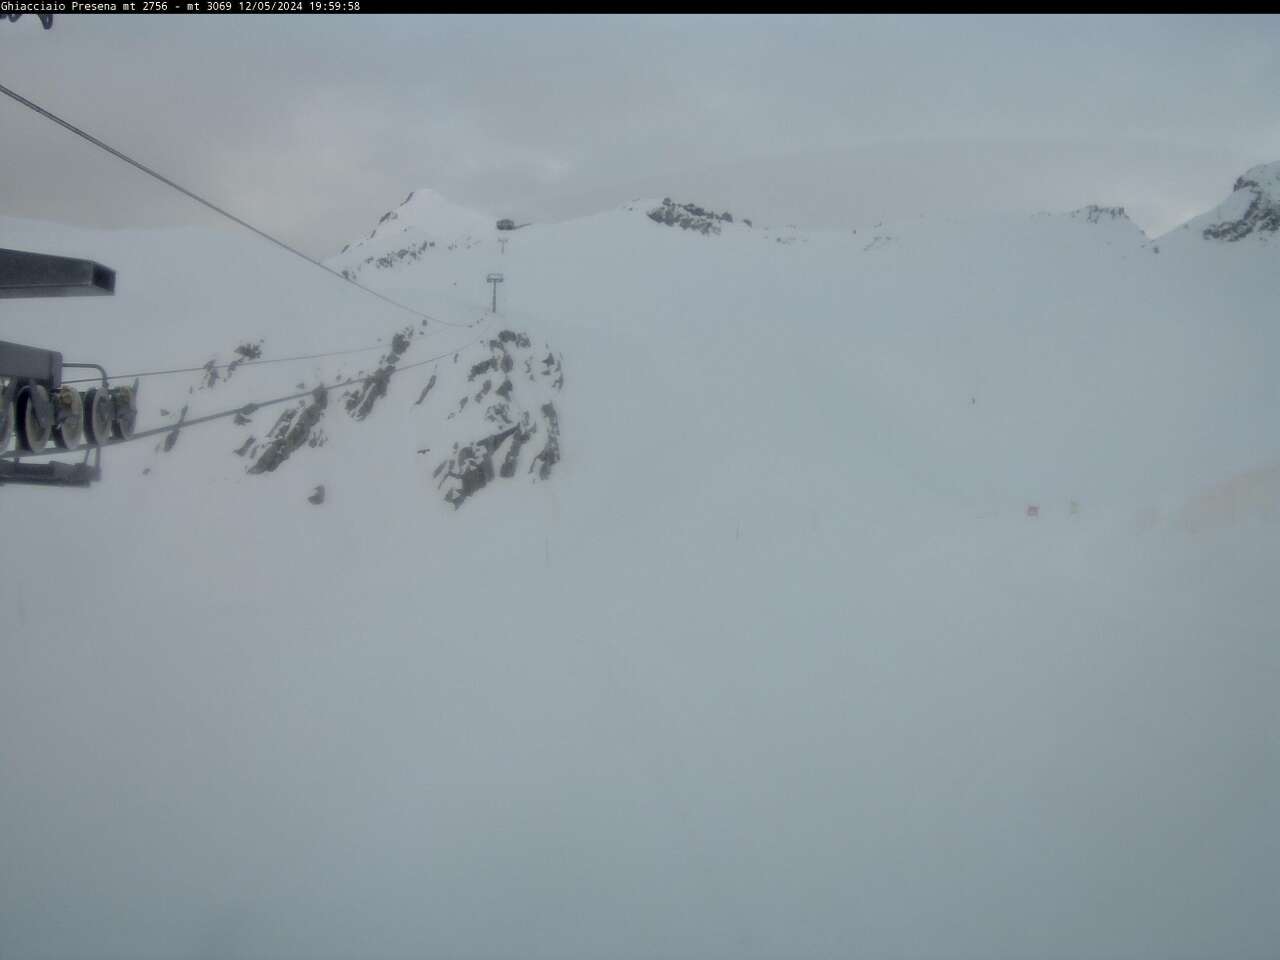 bergfex - Webcam Ghiacciaio Presena - Presena Gletscher - Adamello Ski - Cam  - Livecam